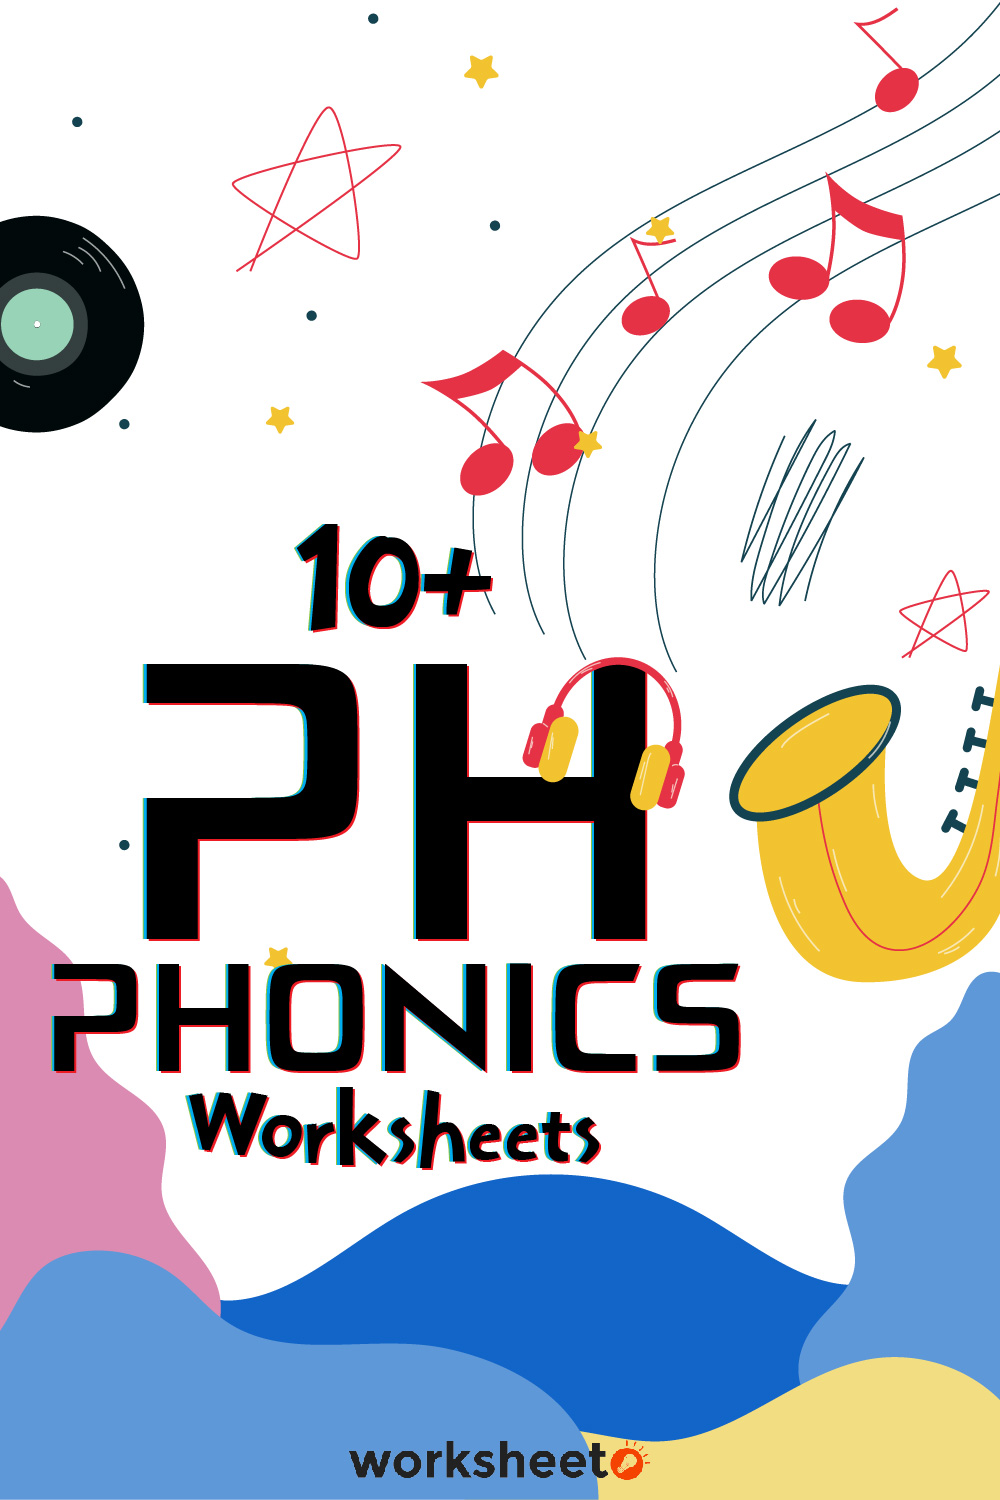 Ph Phonics Worksheets